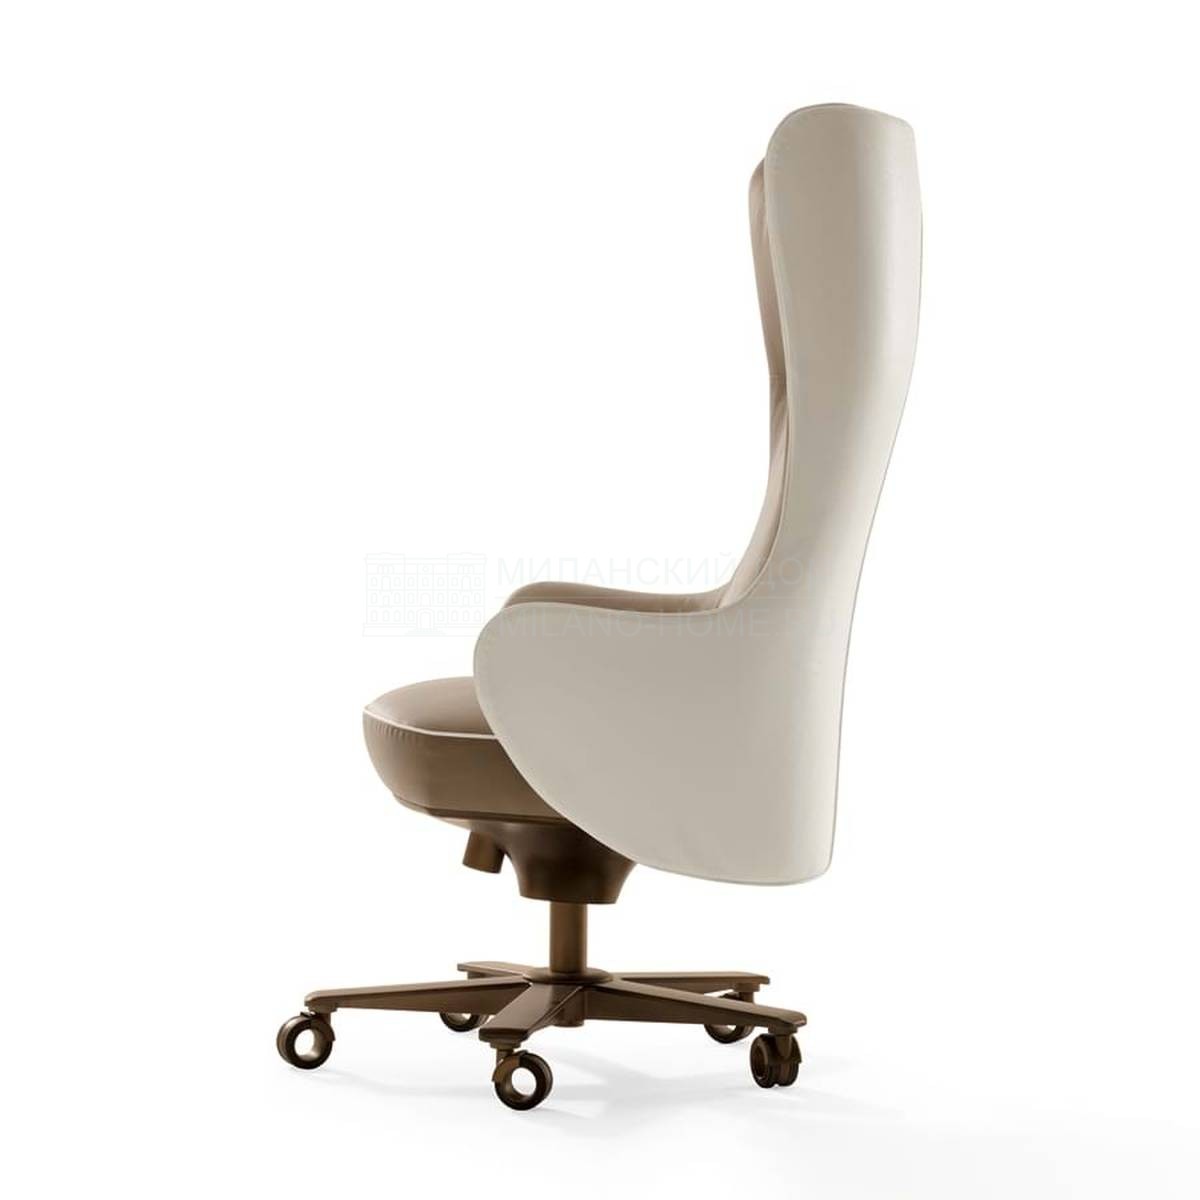 Кожаное кресло Genius 70050-51-55-56 из Италии фабрики GIORGETTI